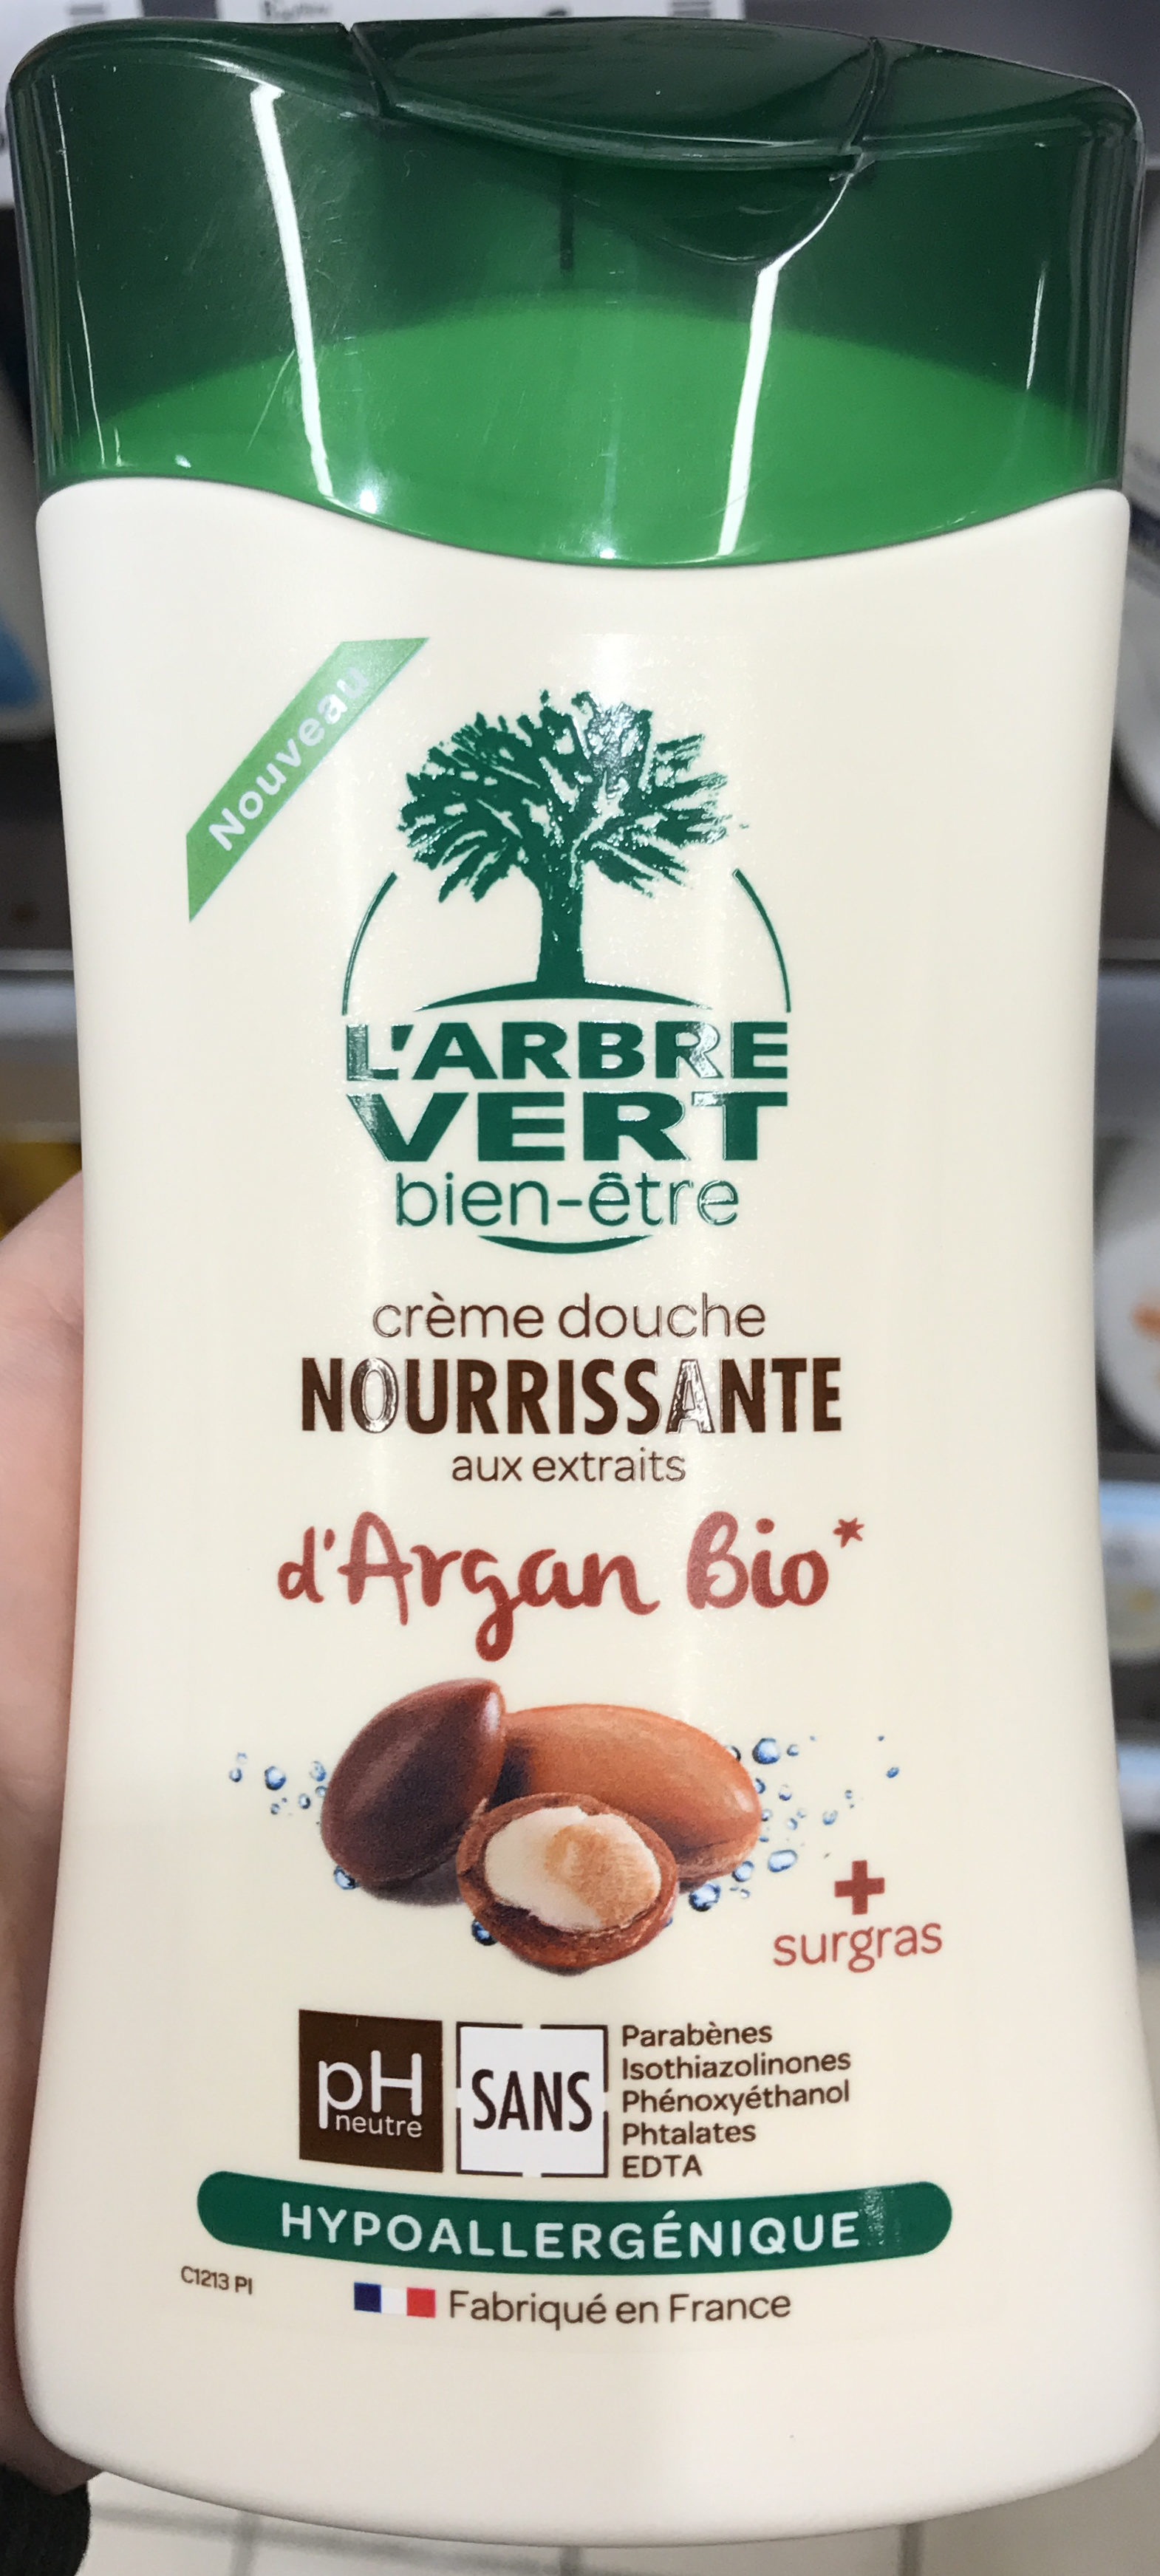 Crème douche Nourissante aux extraits d'Argan bio - Produto - fr